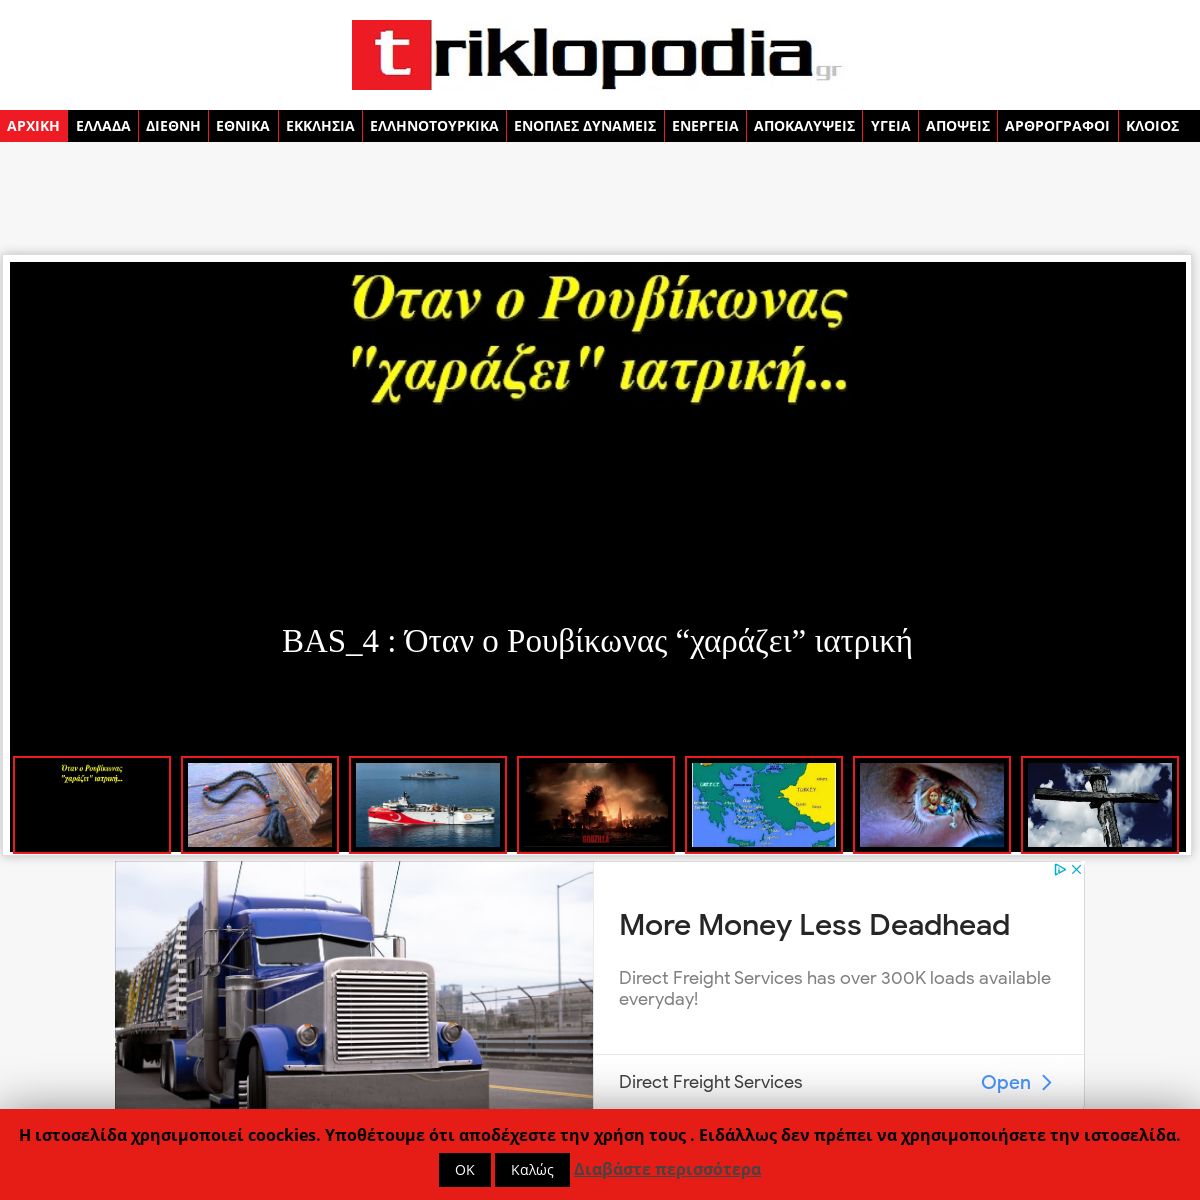 A complete backup of triklopodia.gr